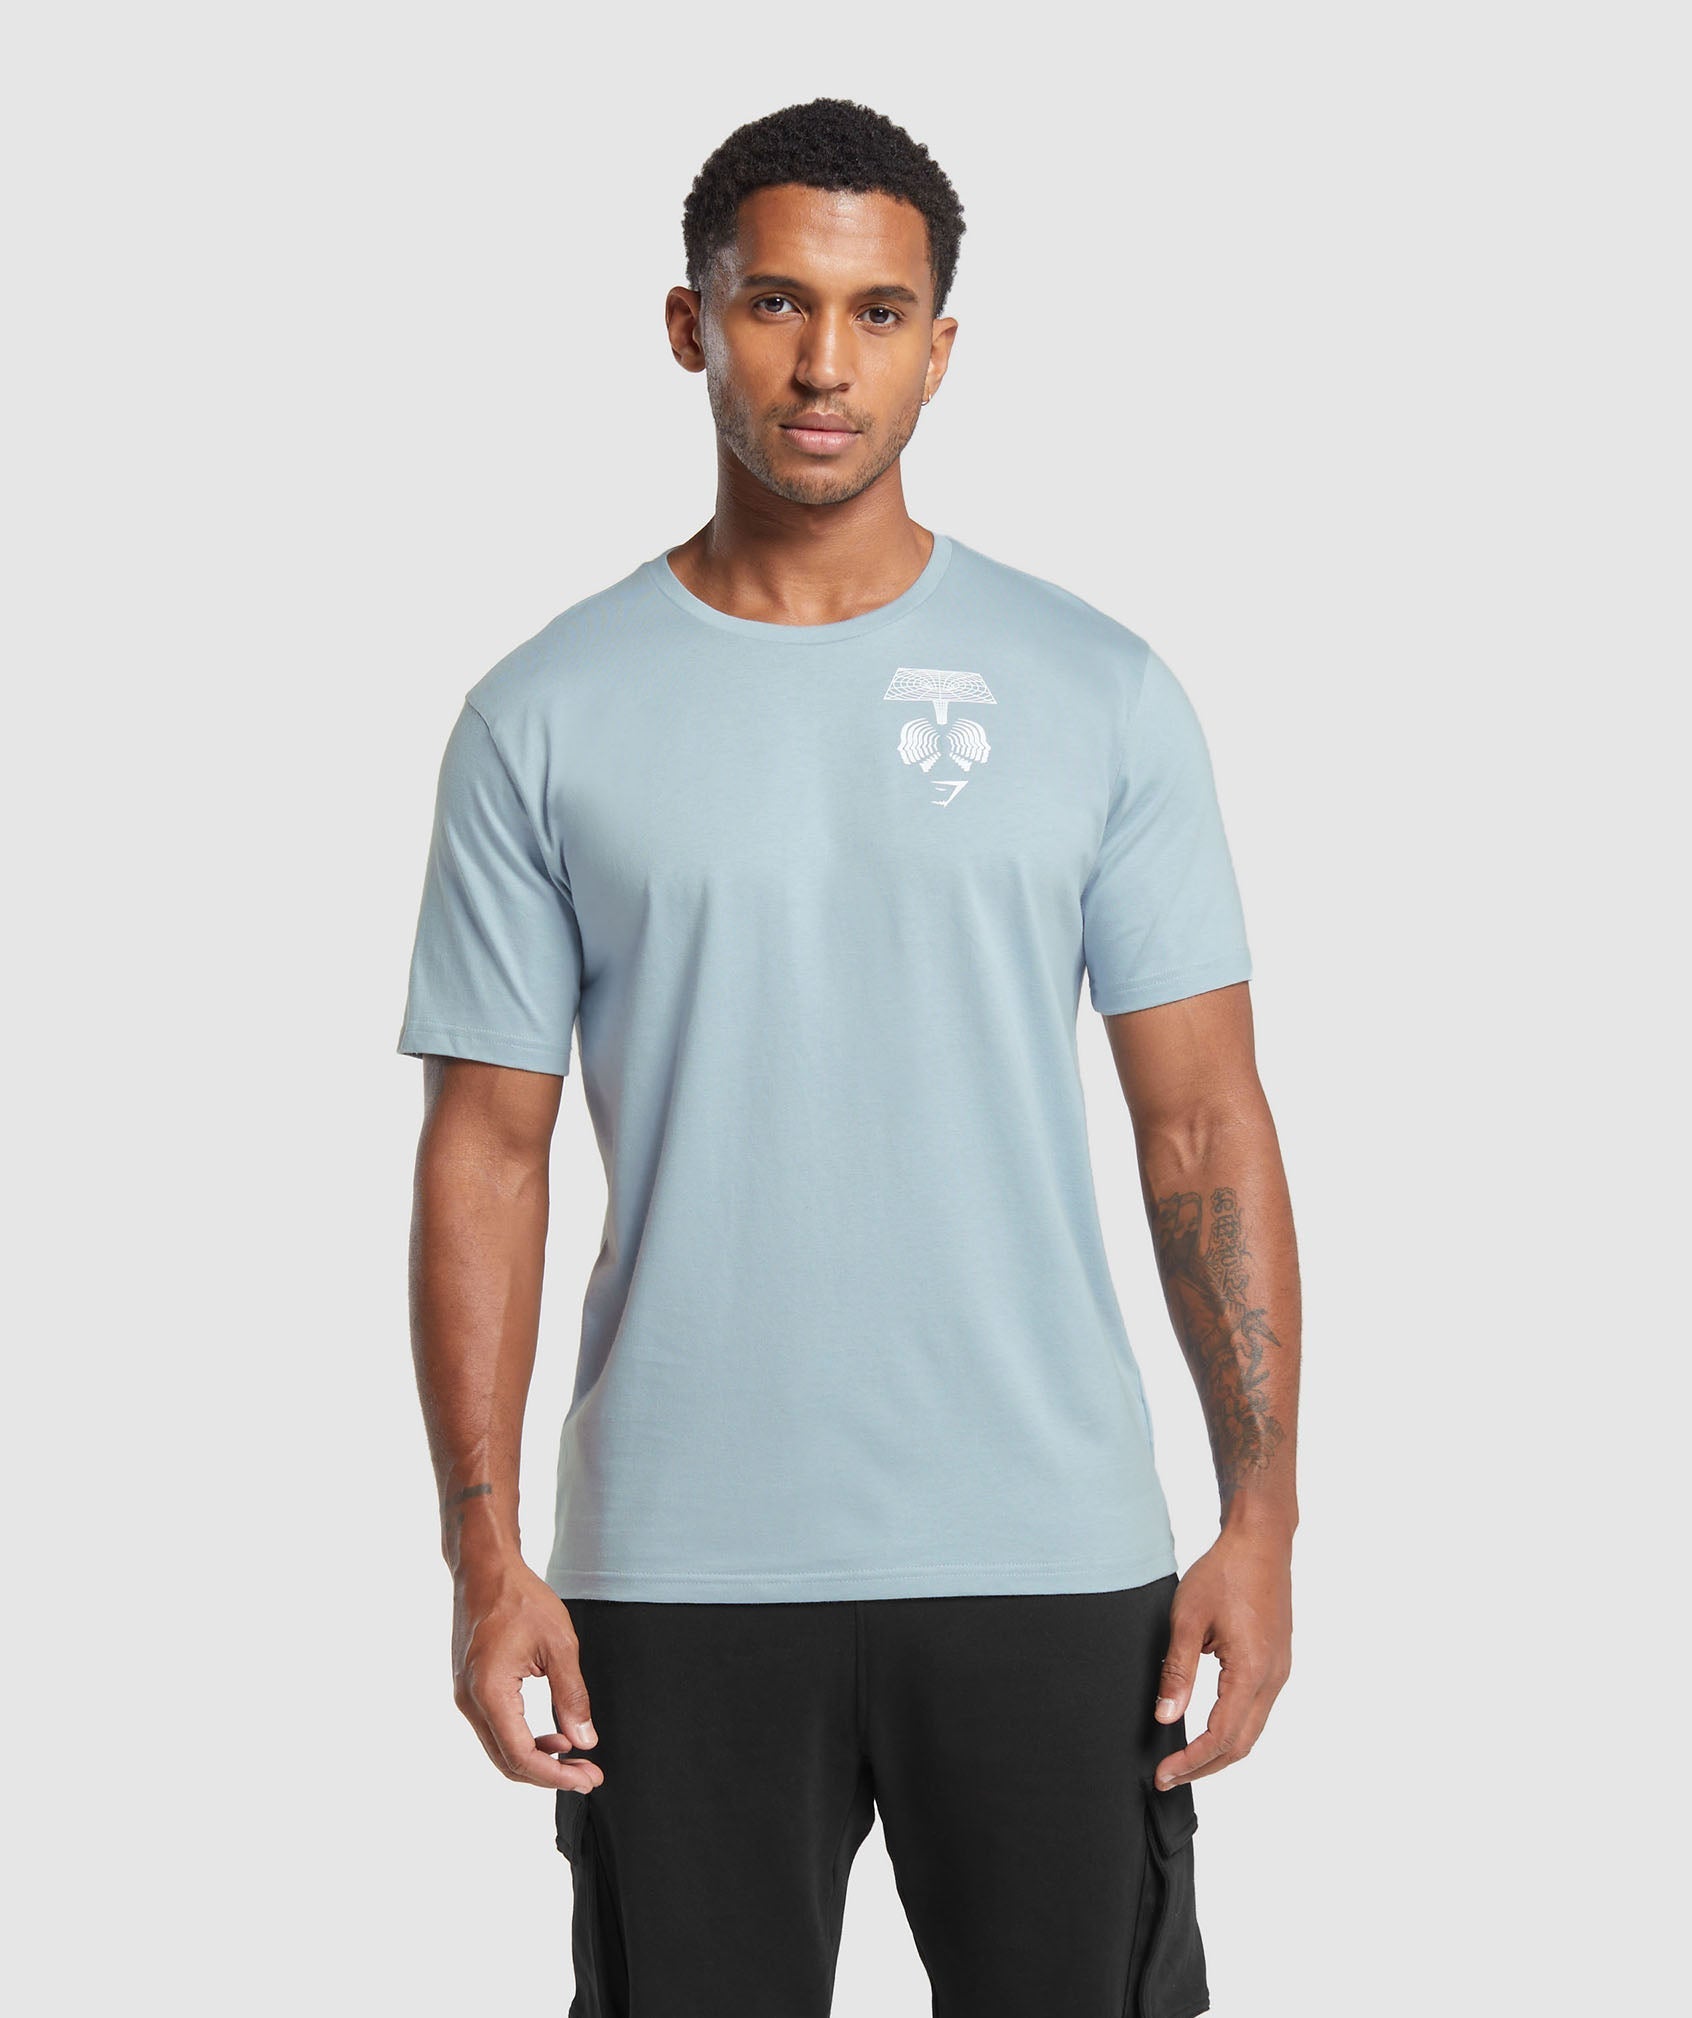 Hybrid Wellness T-Shirt in Salt Blue - view 2